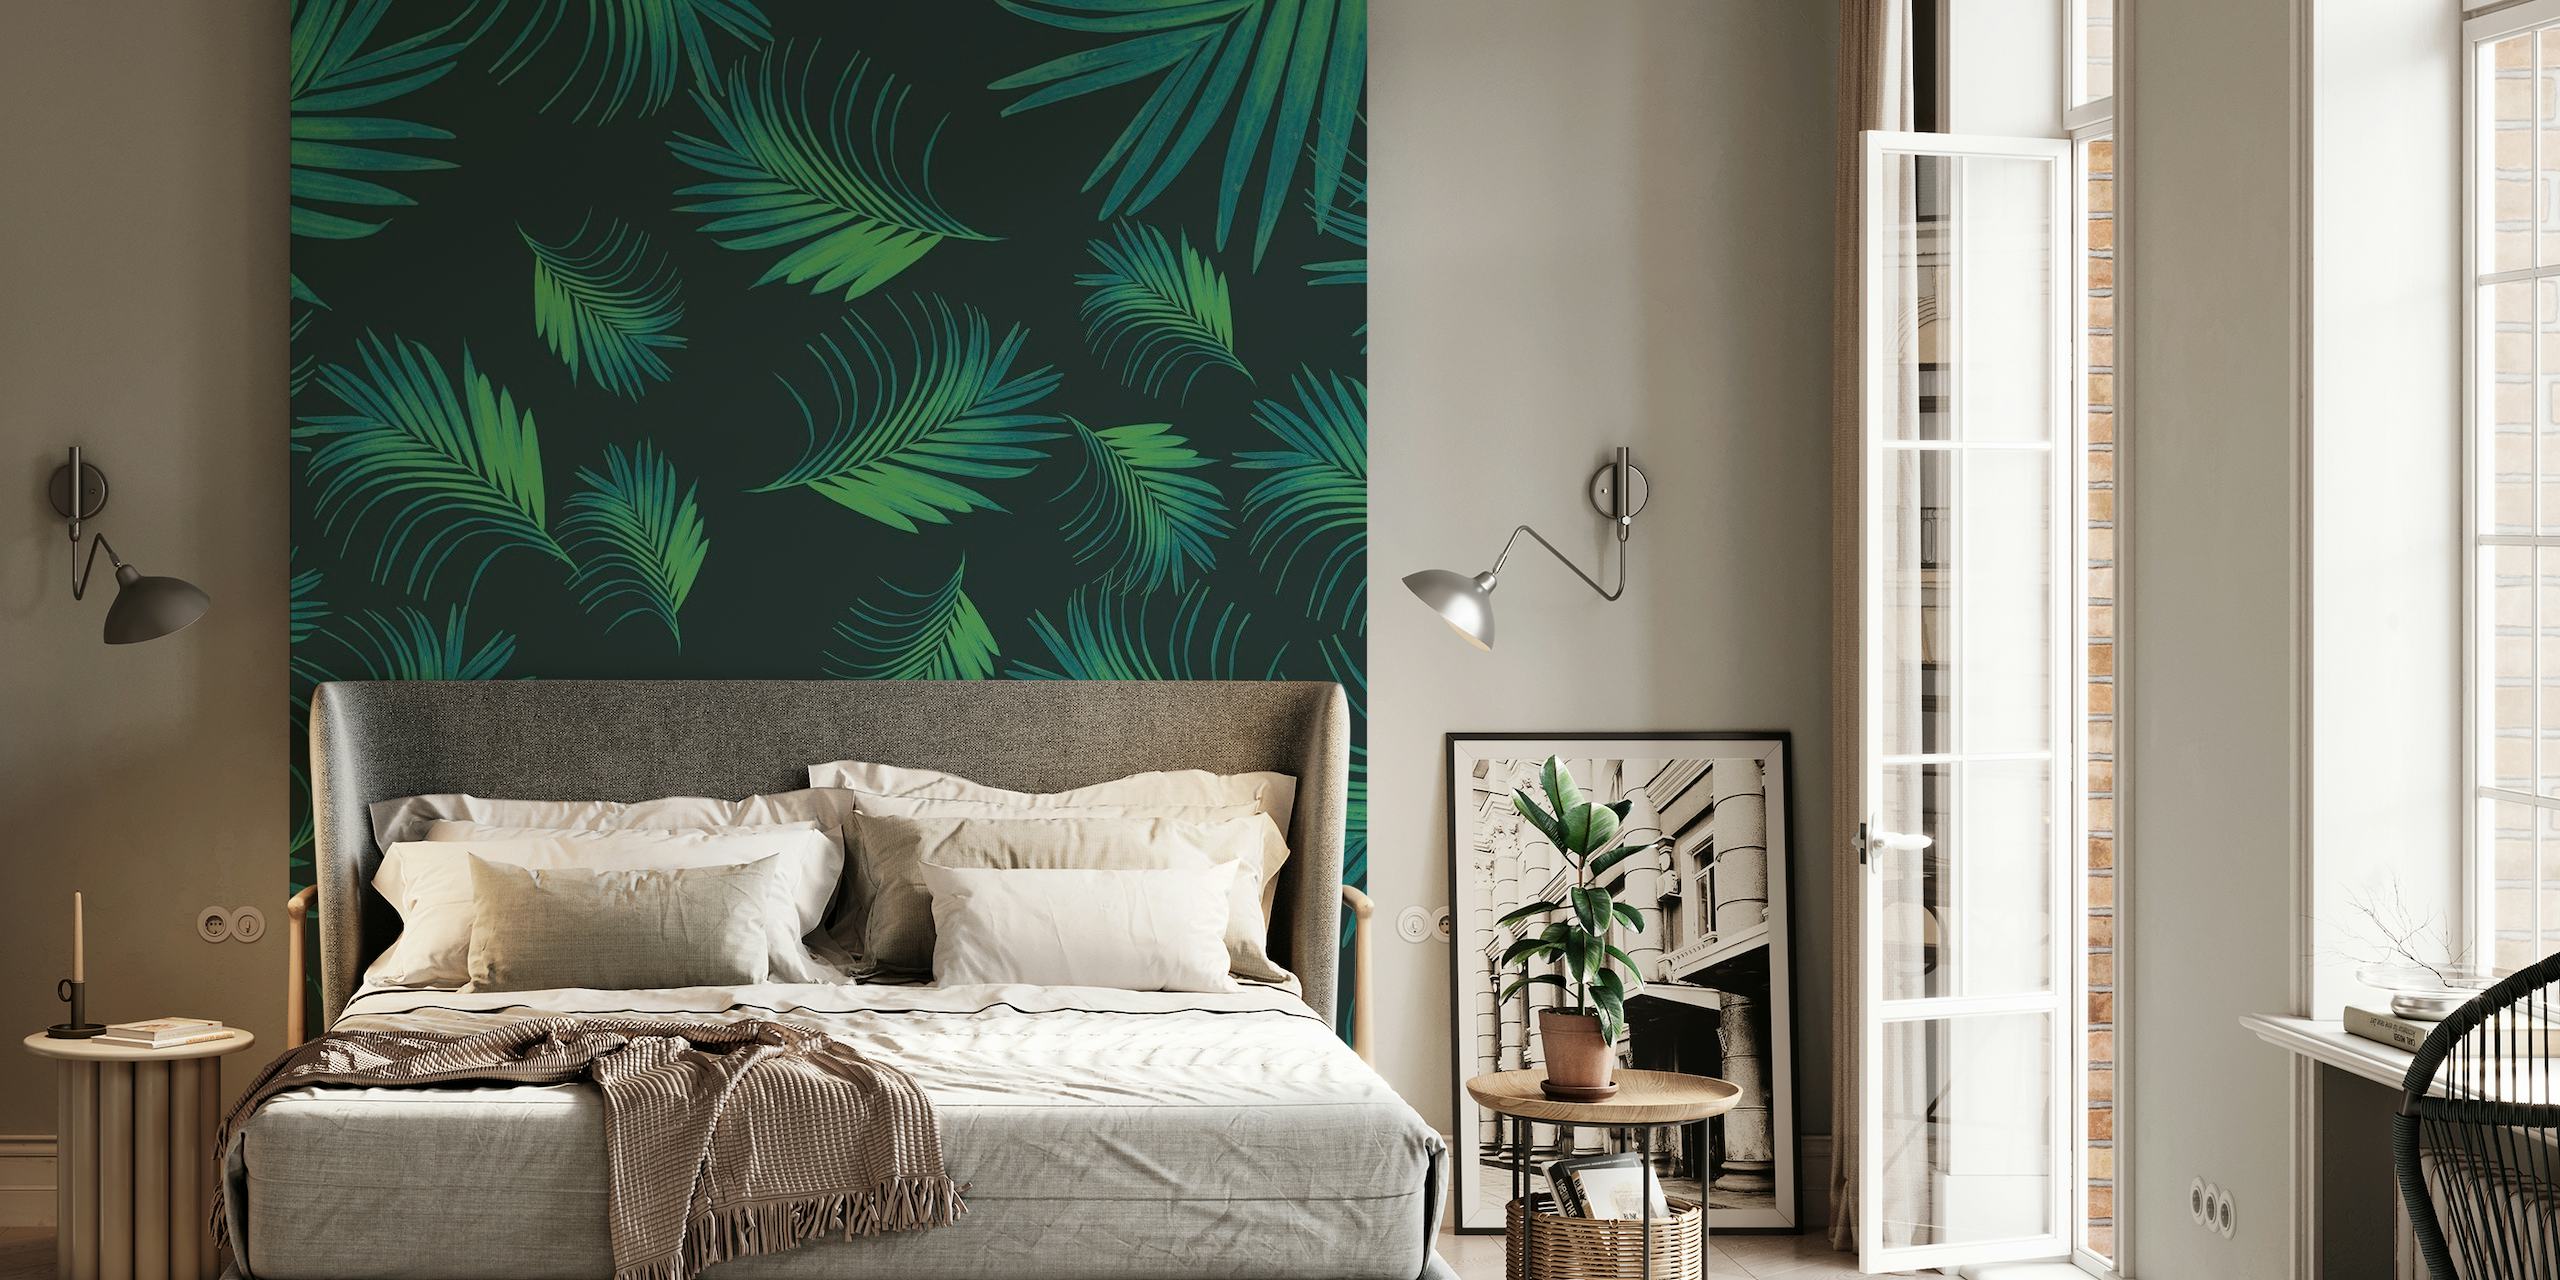 Tropical Night Palms Pattern Vægmaleri med grønne blade på en mørk baggrund